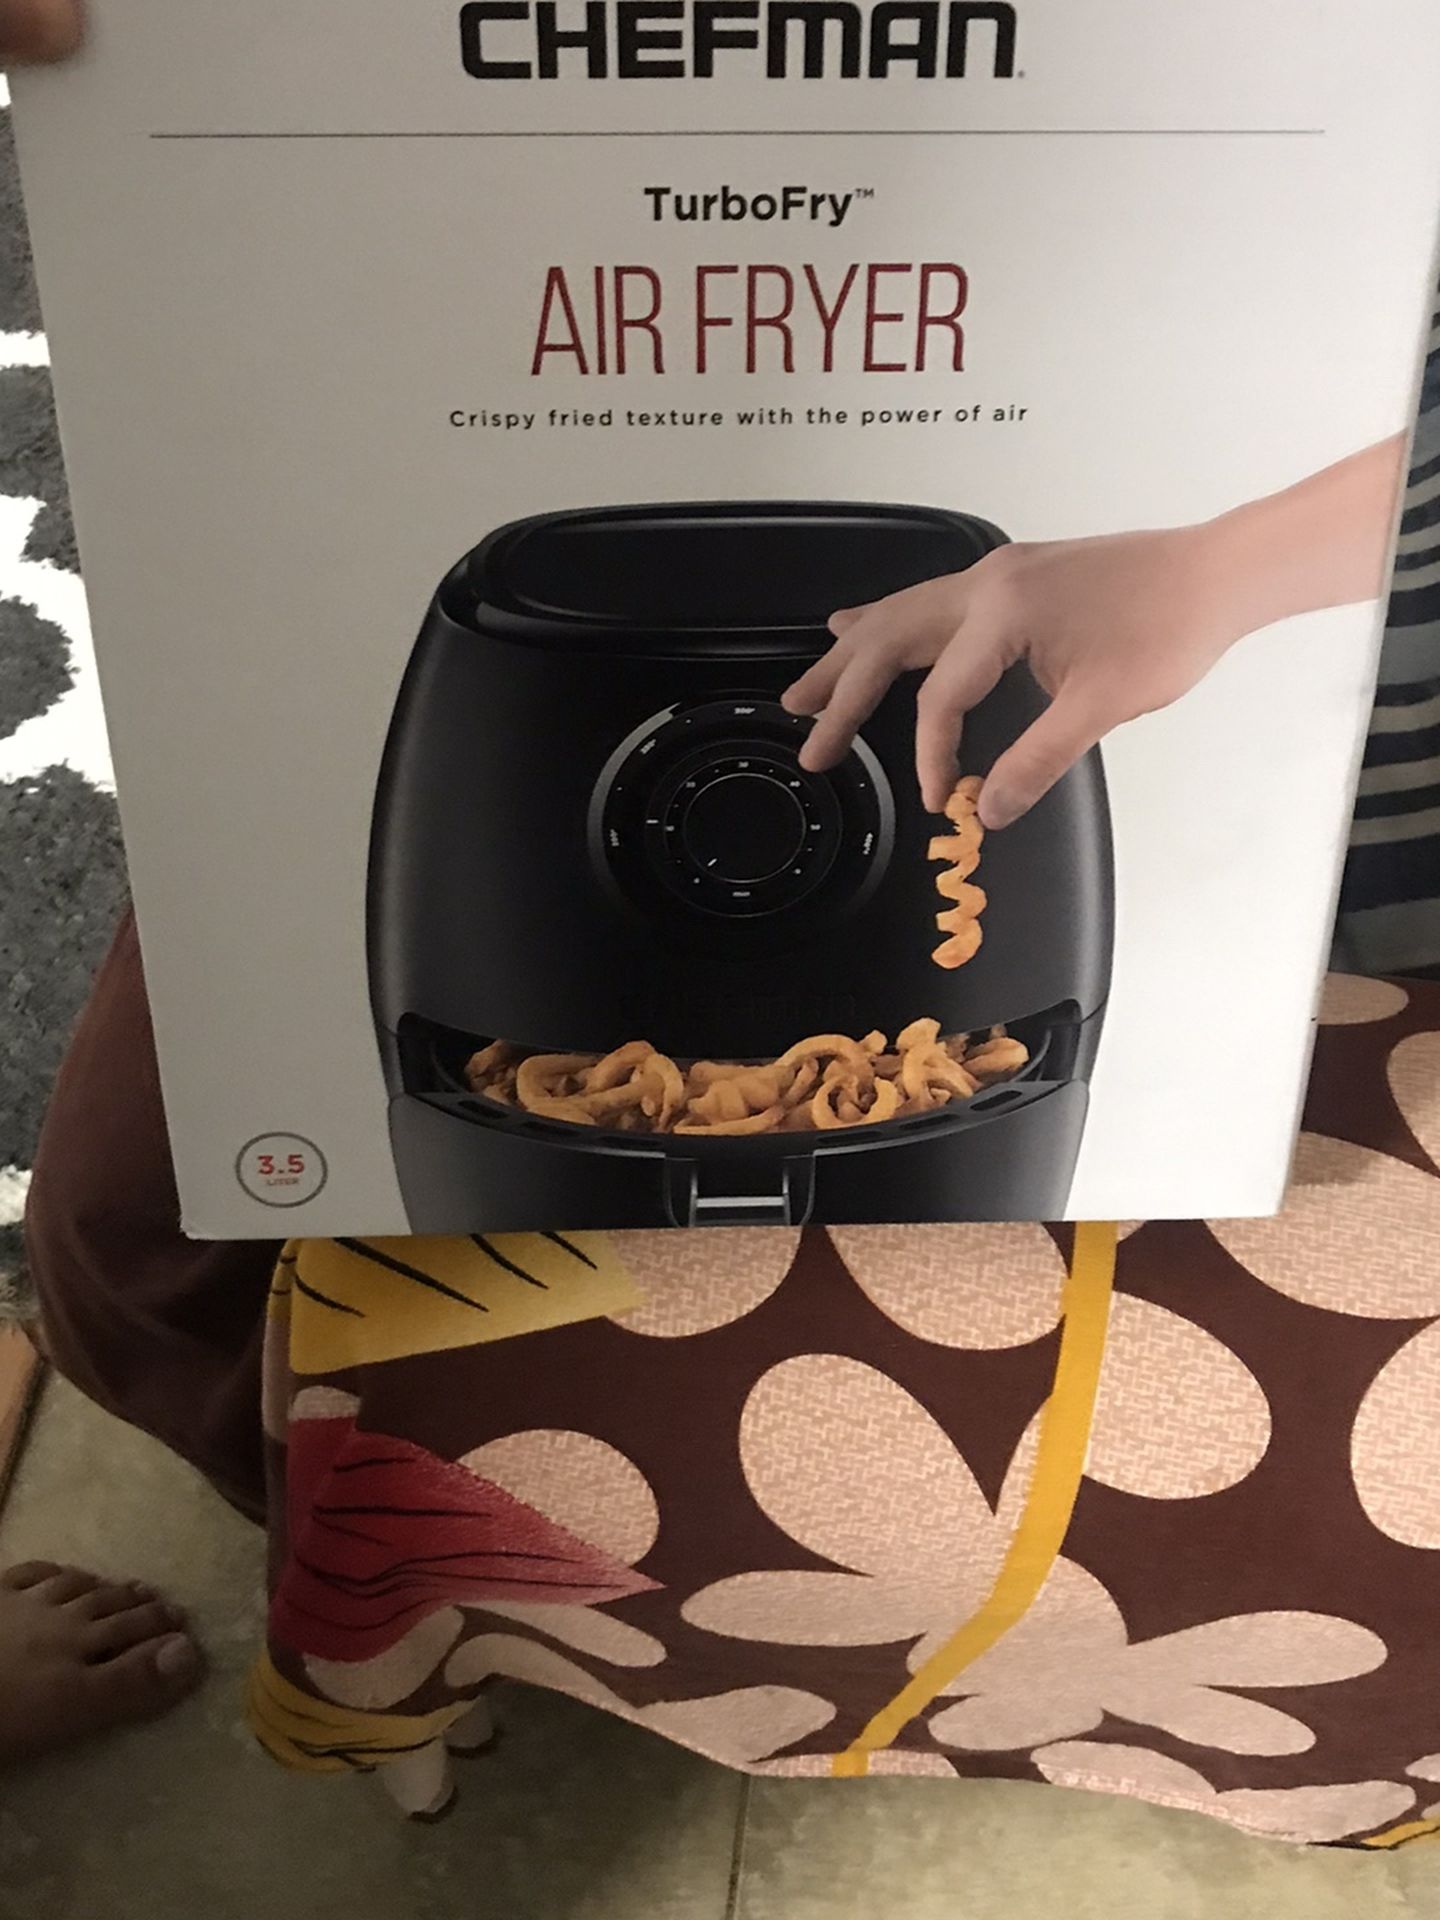 Air Fryer